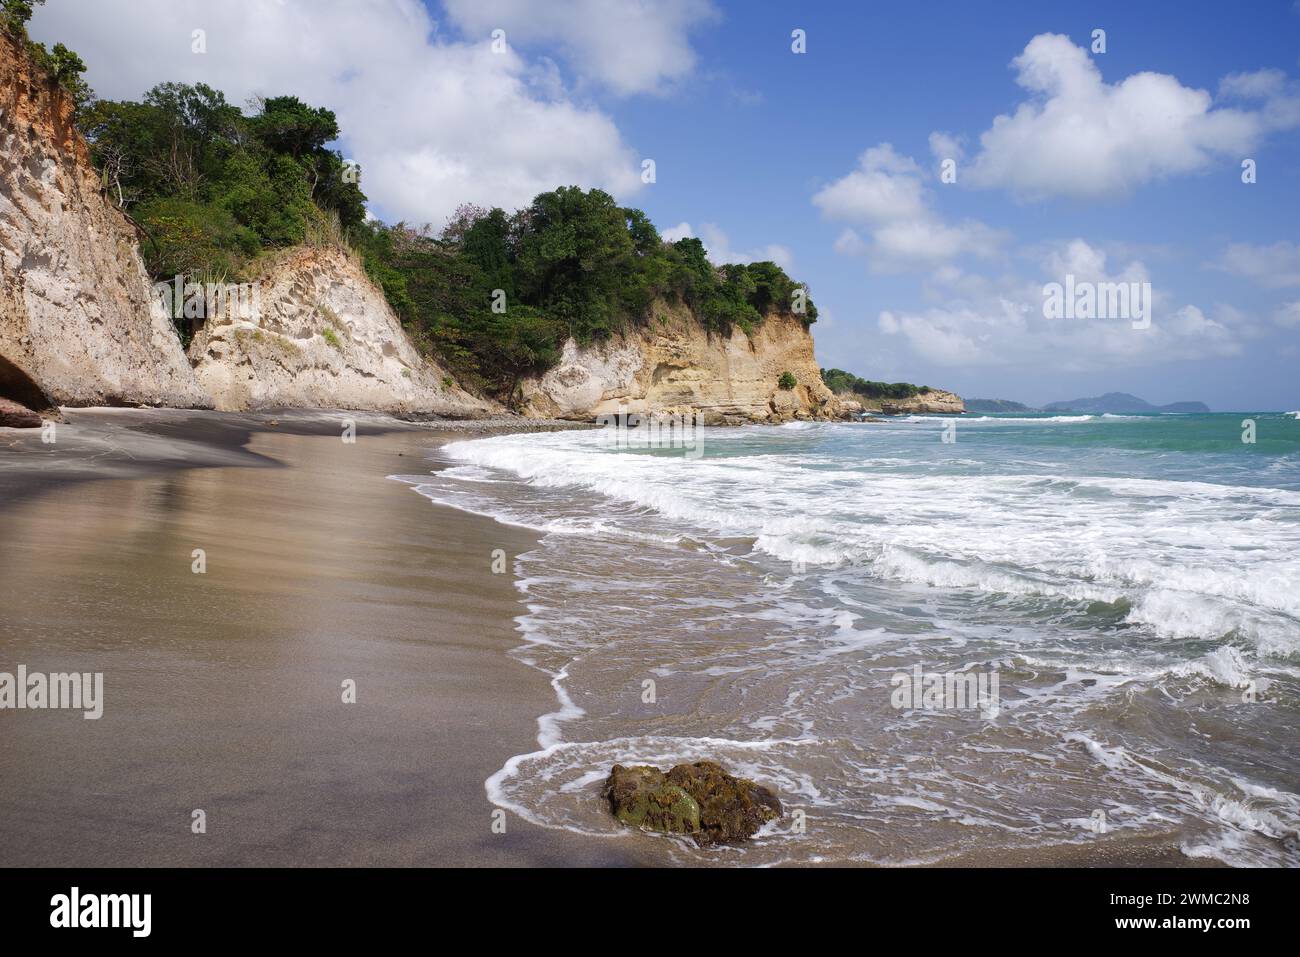 Belle plage accidentée de Balenbouche - le sable est noir en raison des particules de basalte de l'activité volcanique passée dans la région (Sainte-Lucie, Antilles) Banque D'Images